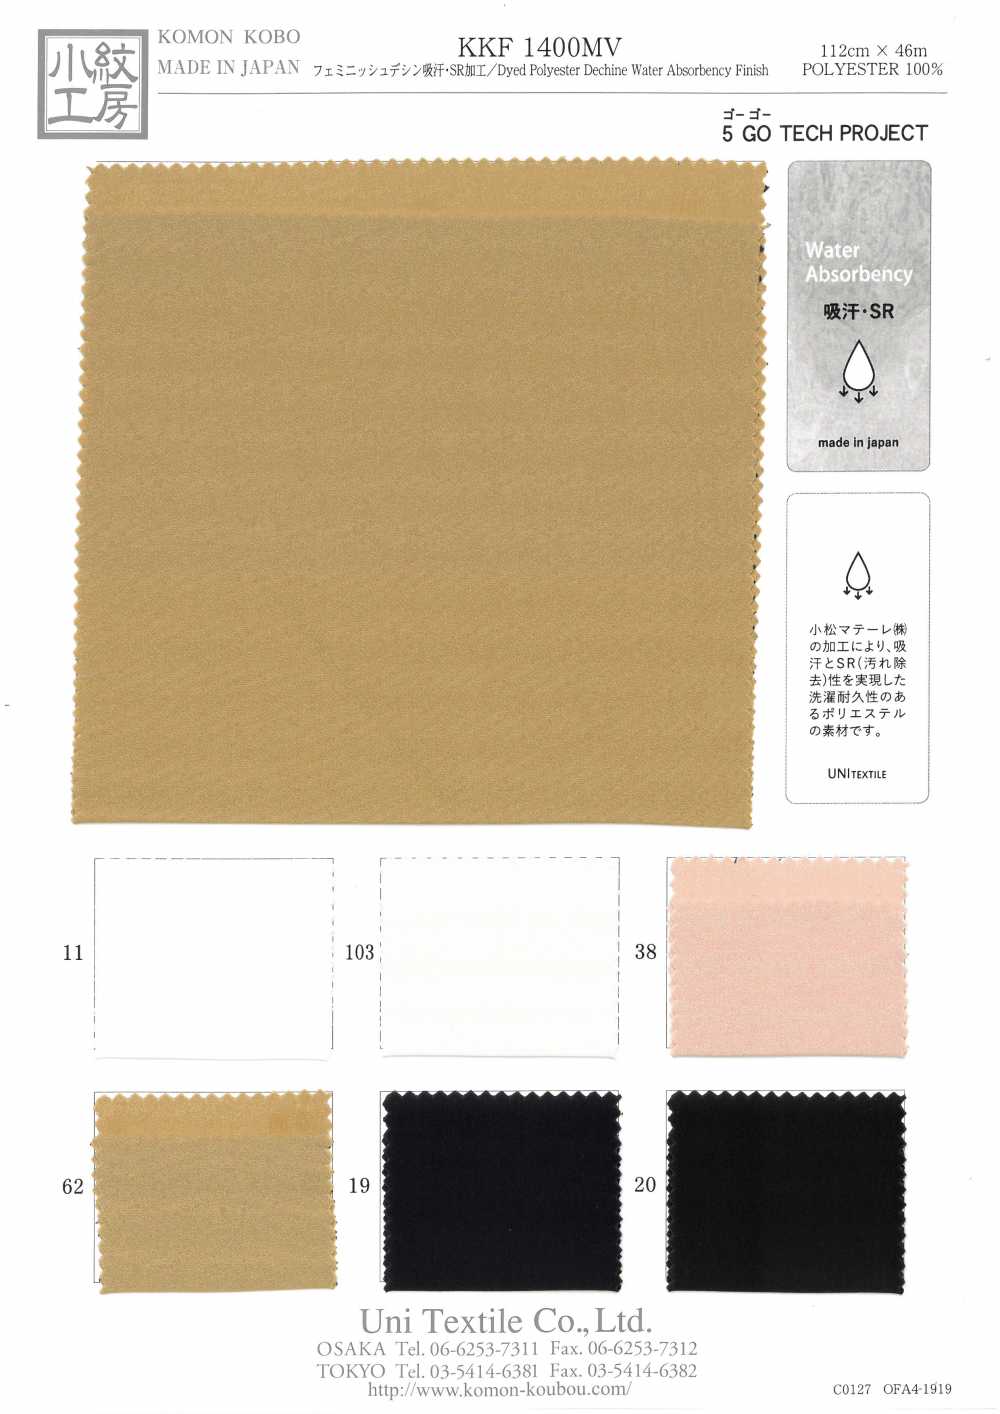 KKF1400MV Absorção De Suor Feminino Decin / Processamento SR[Têxtil / Tecido] Uni Textile